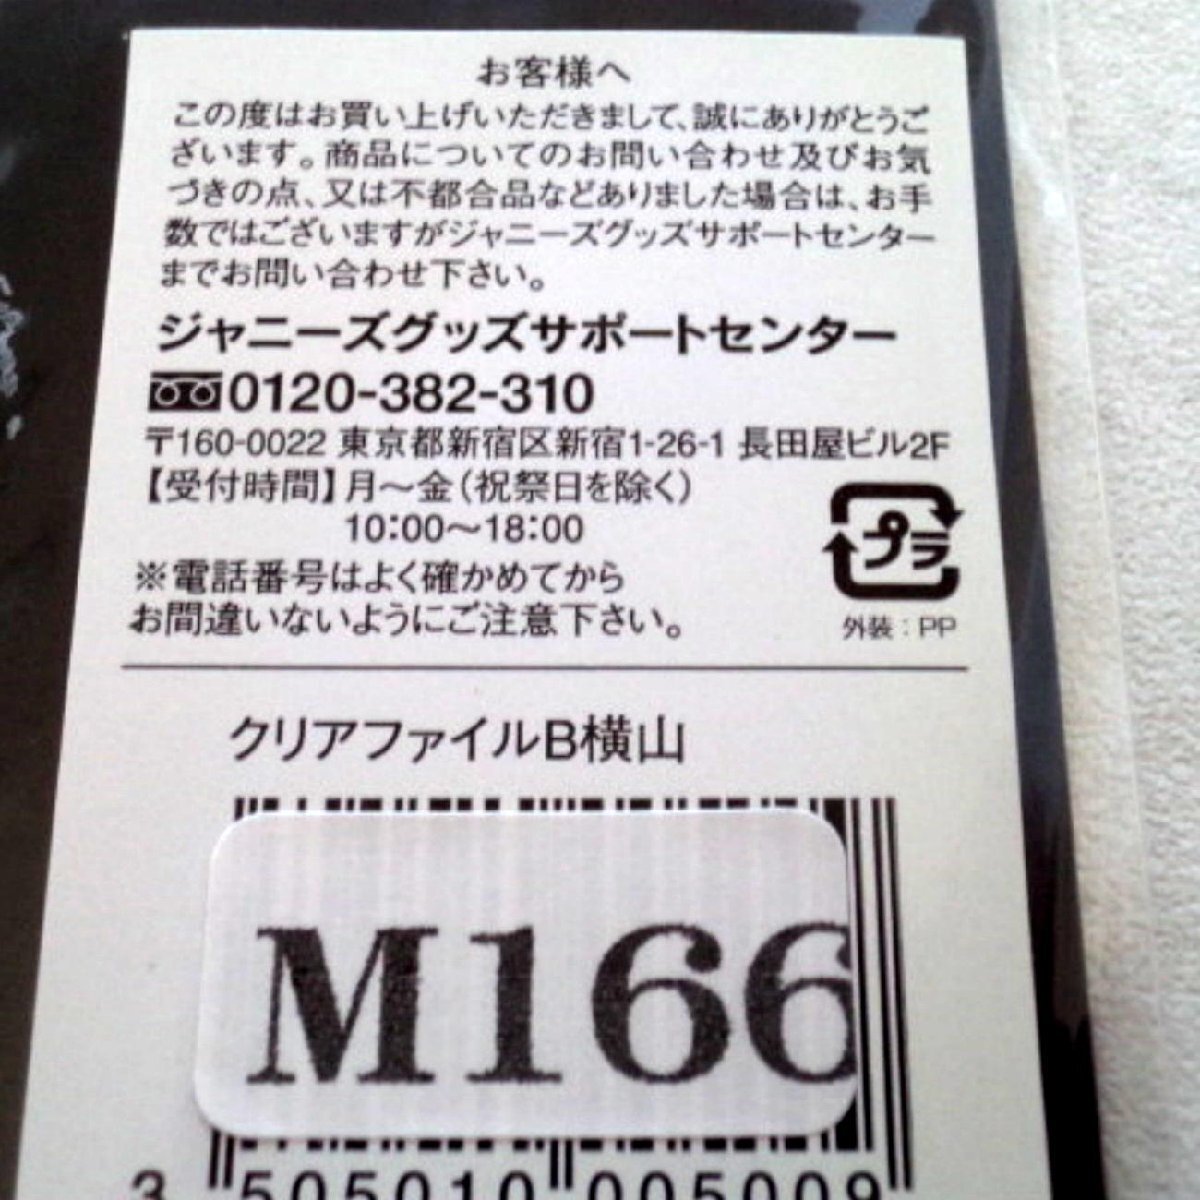 * не использовался * включение в покупку возможно *.jani-(SUPER EIGHT) Yokoyama Yuu *A4 прозрачный файл [KANJANI- LIVE TOUR 2008 -..! все участник набор ]*M166